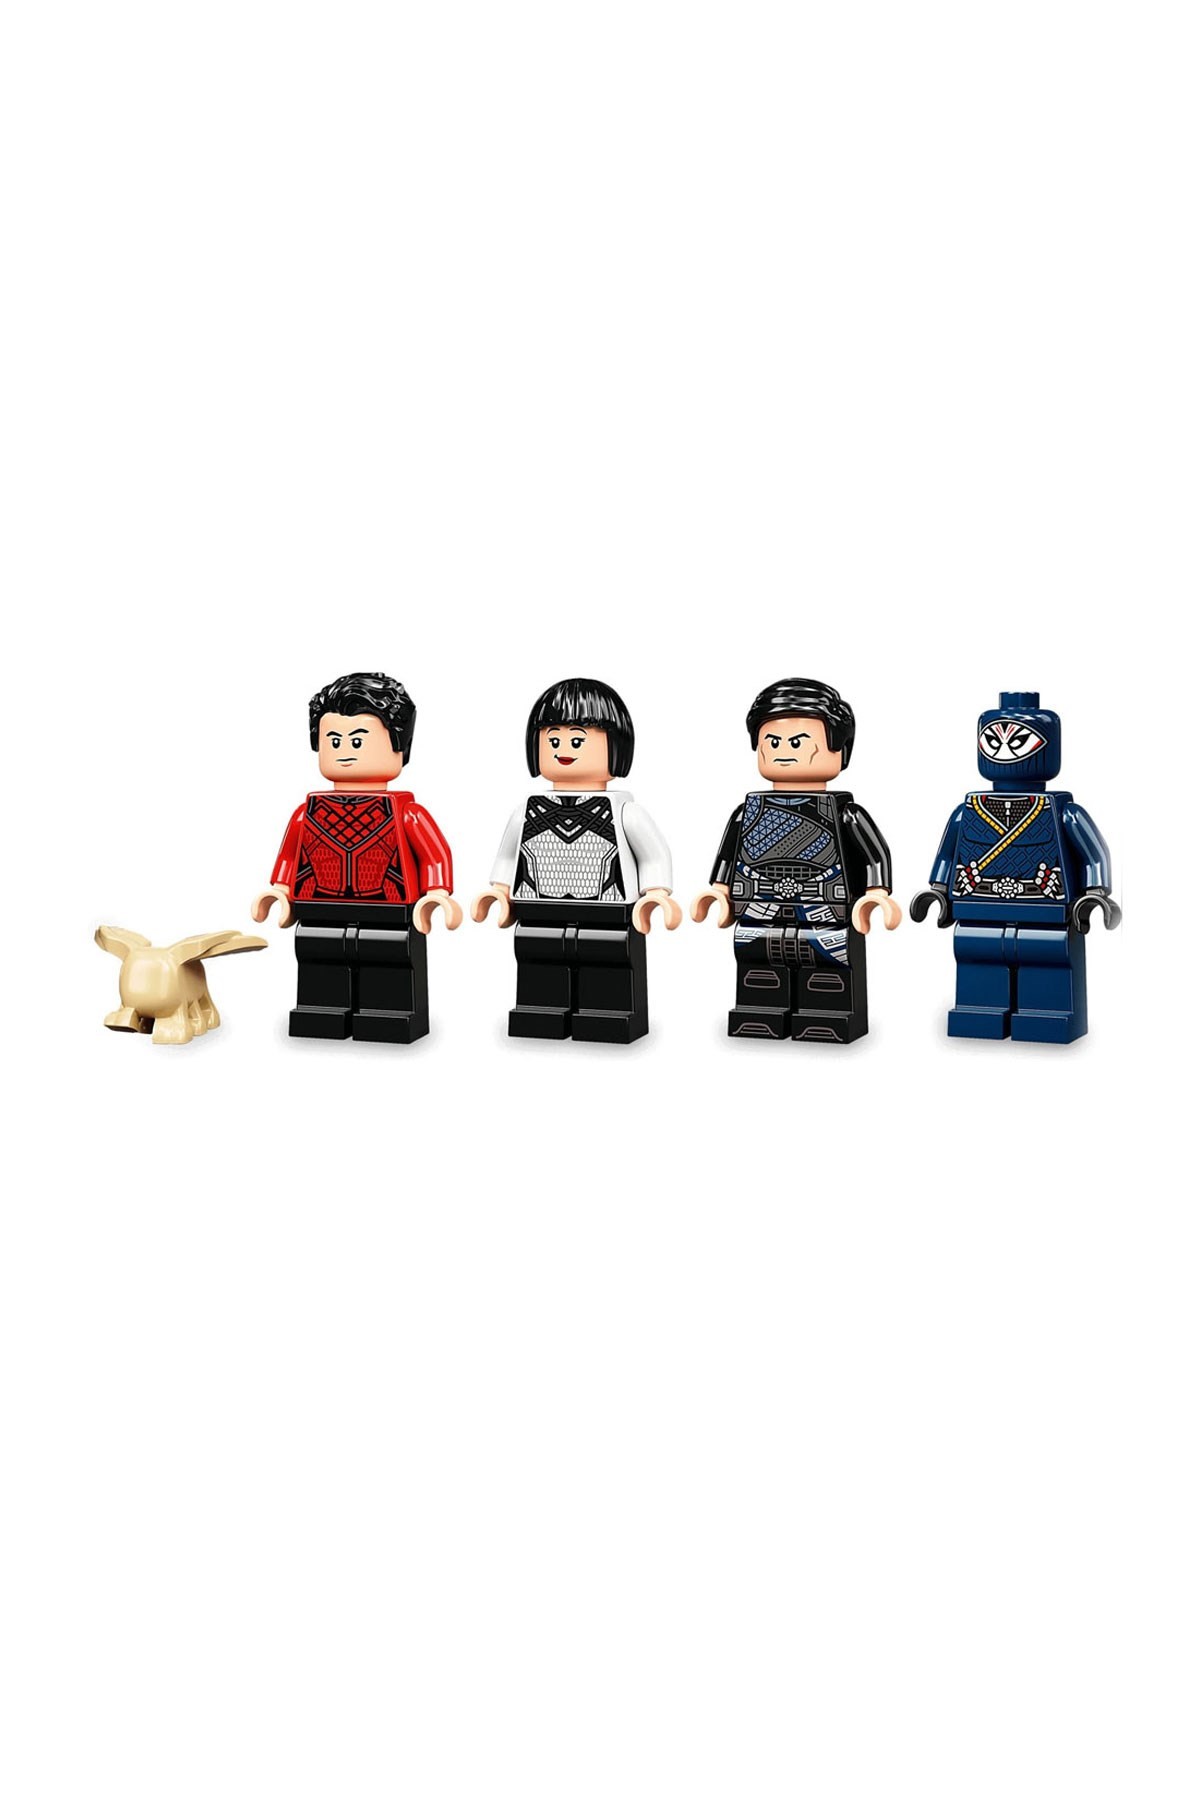 Lego Marvel Shang-Chi Antik Köyde Savaş